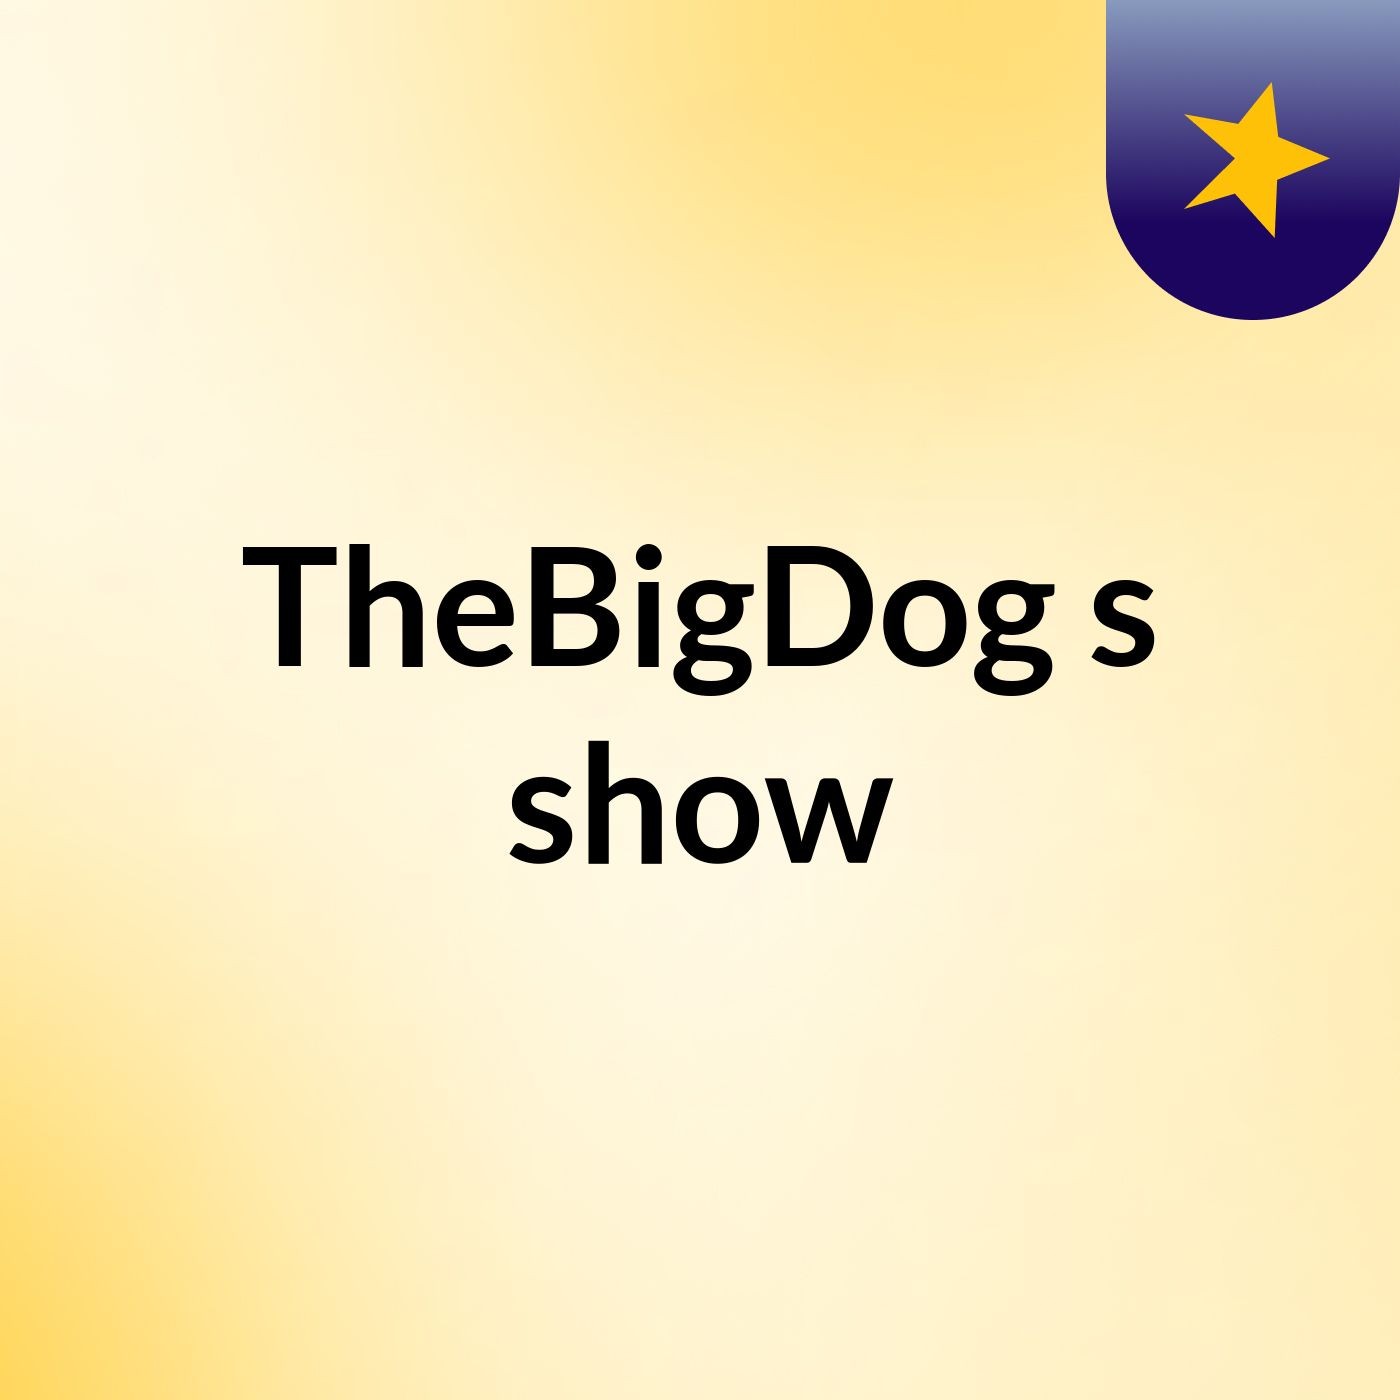 TheBigDog's show